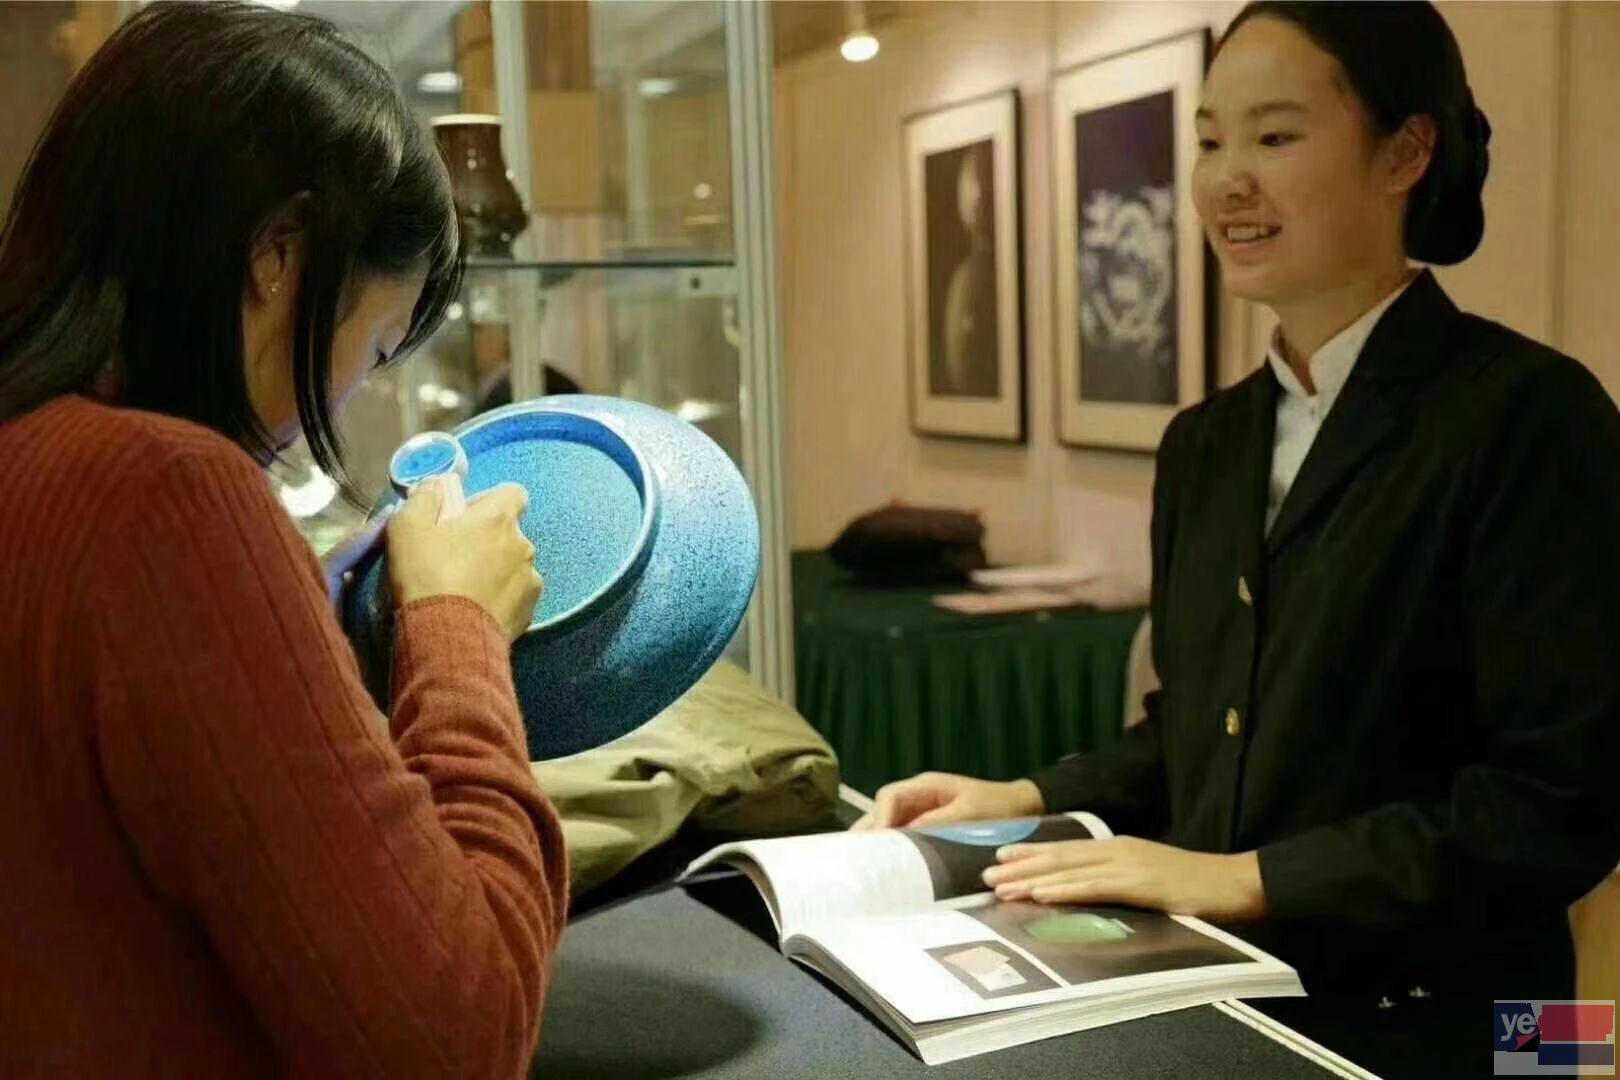 内蒙古 大型艺术品鉴宝活动 免费评估鉴定 正规拍卖 私下交易